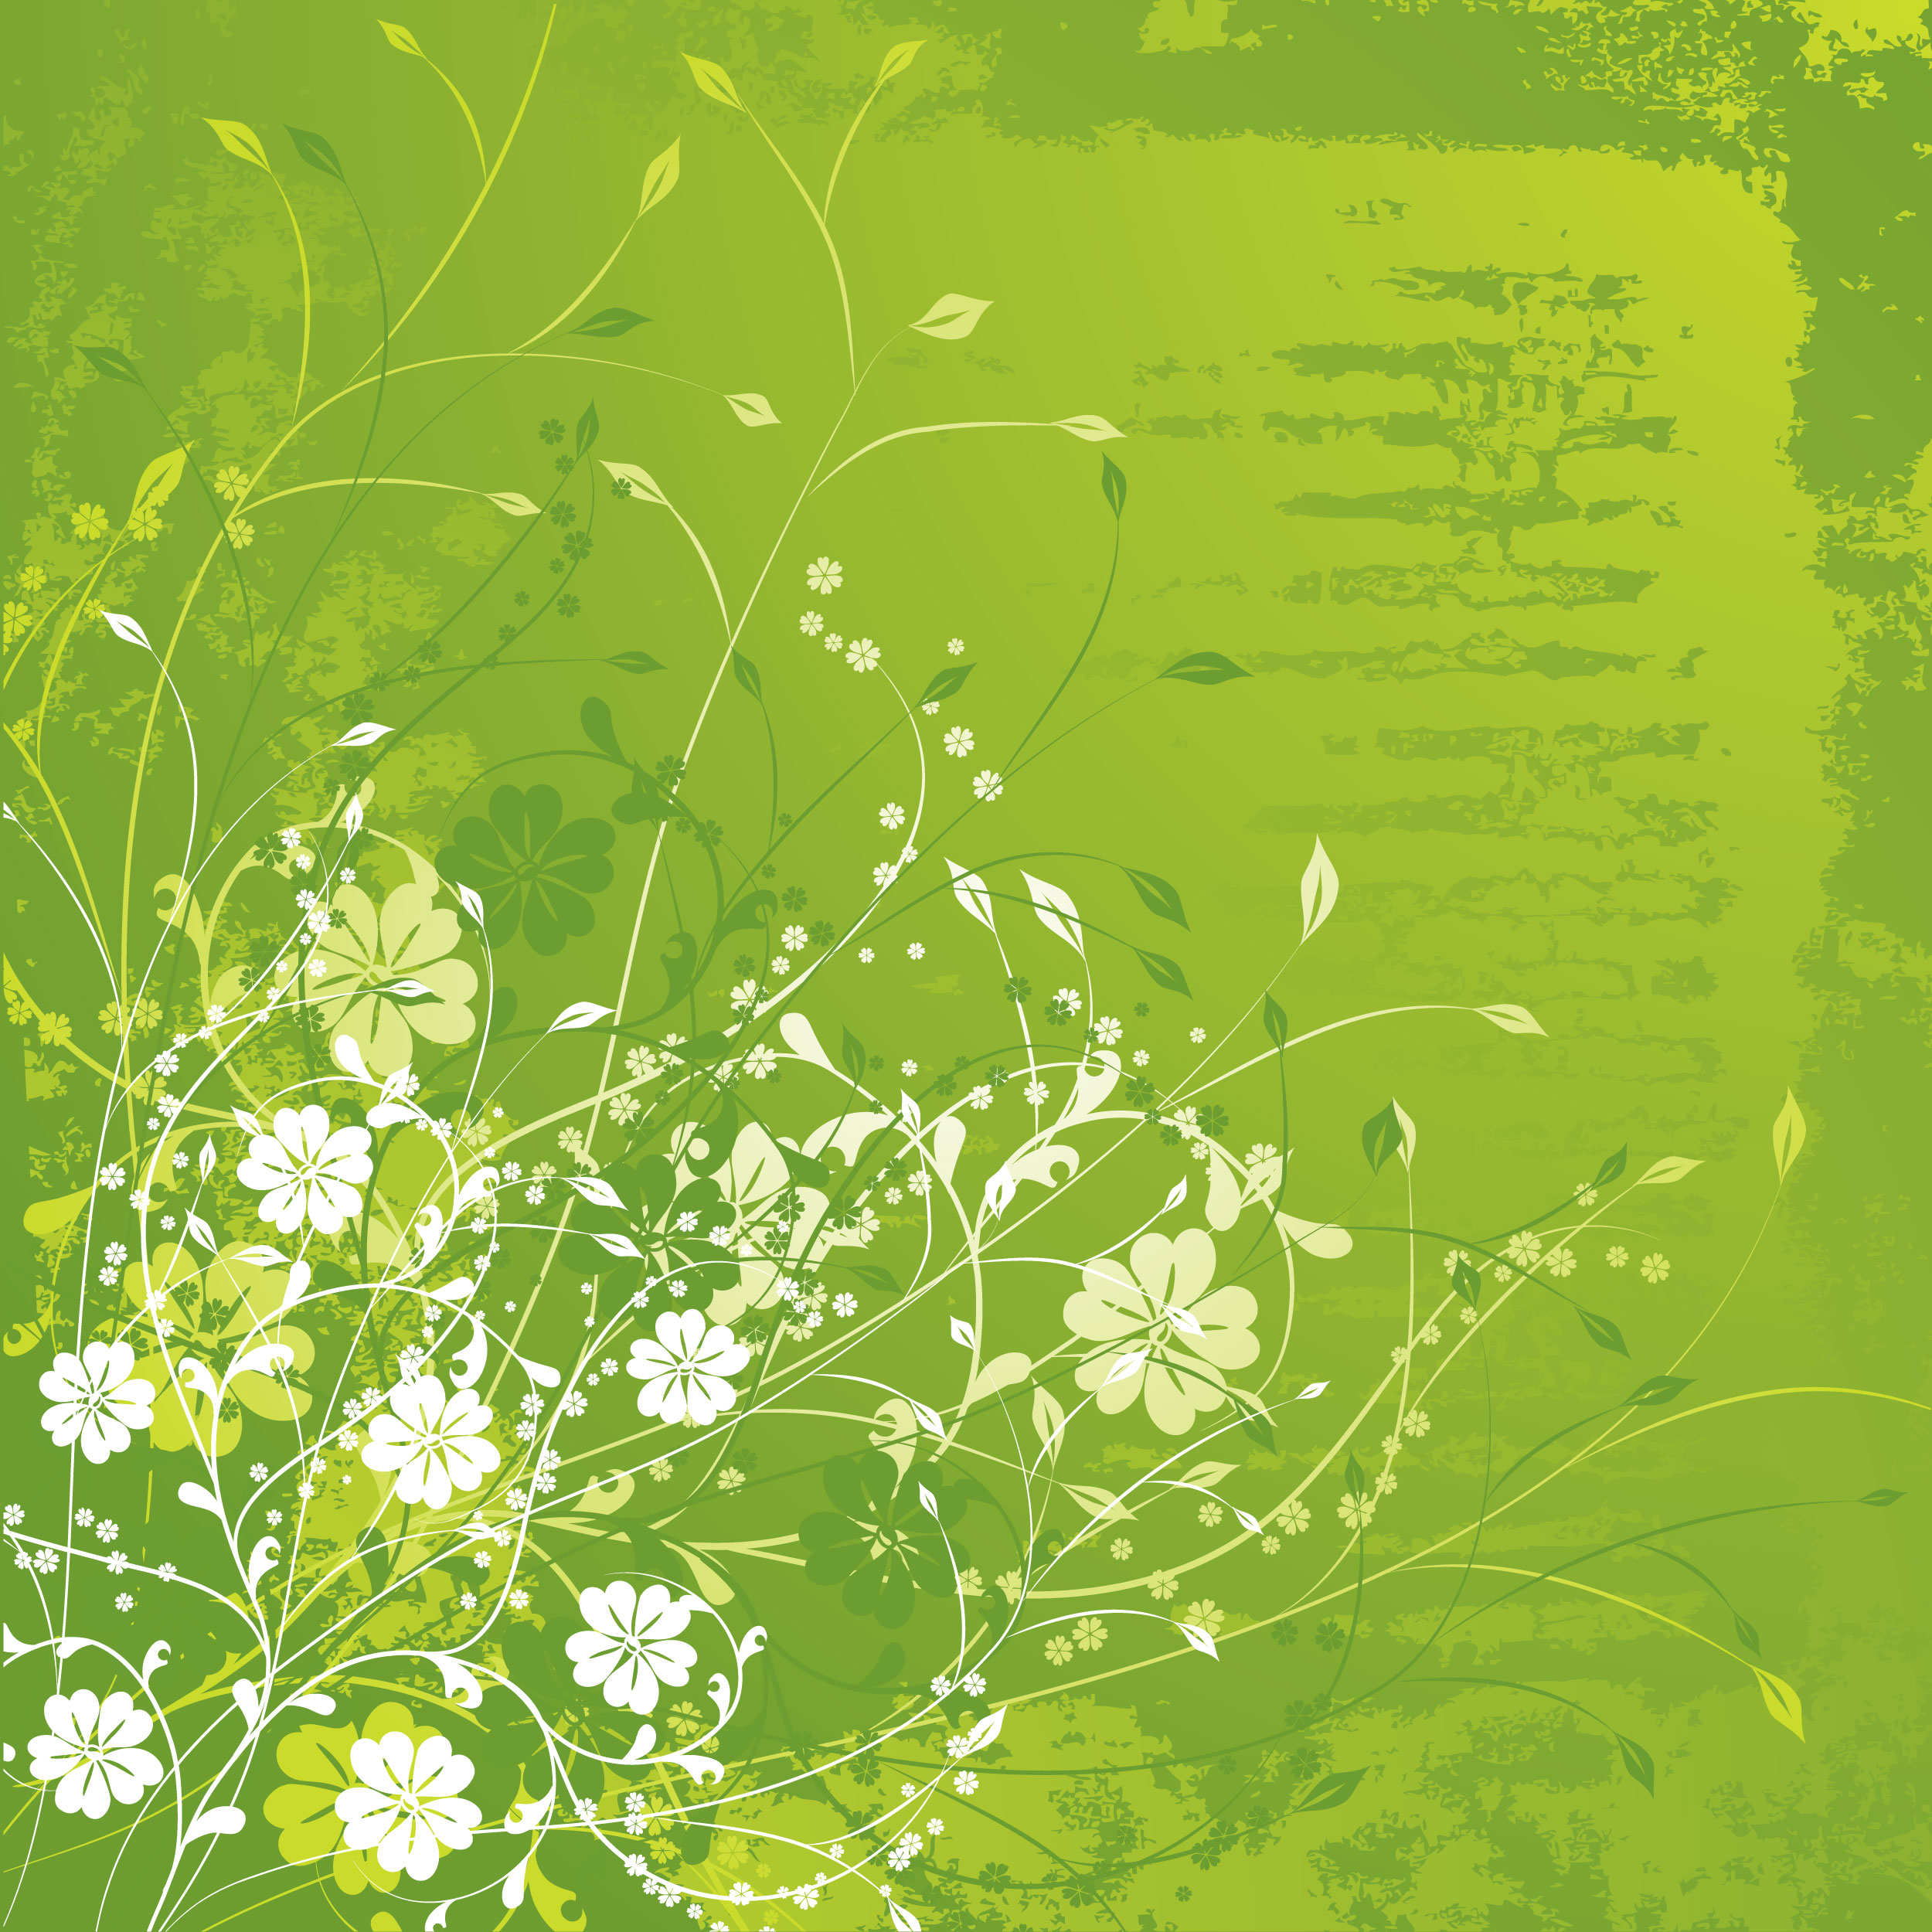 緑色の花のイラスト フリー素材 背景 壁紙no 1 緑 白抜き 茎葉